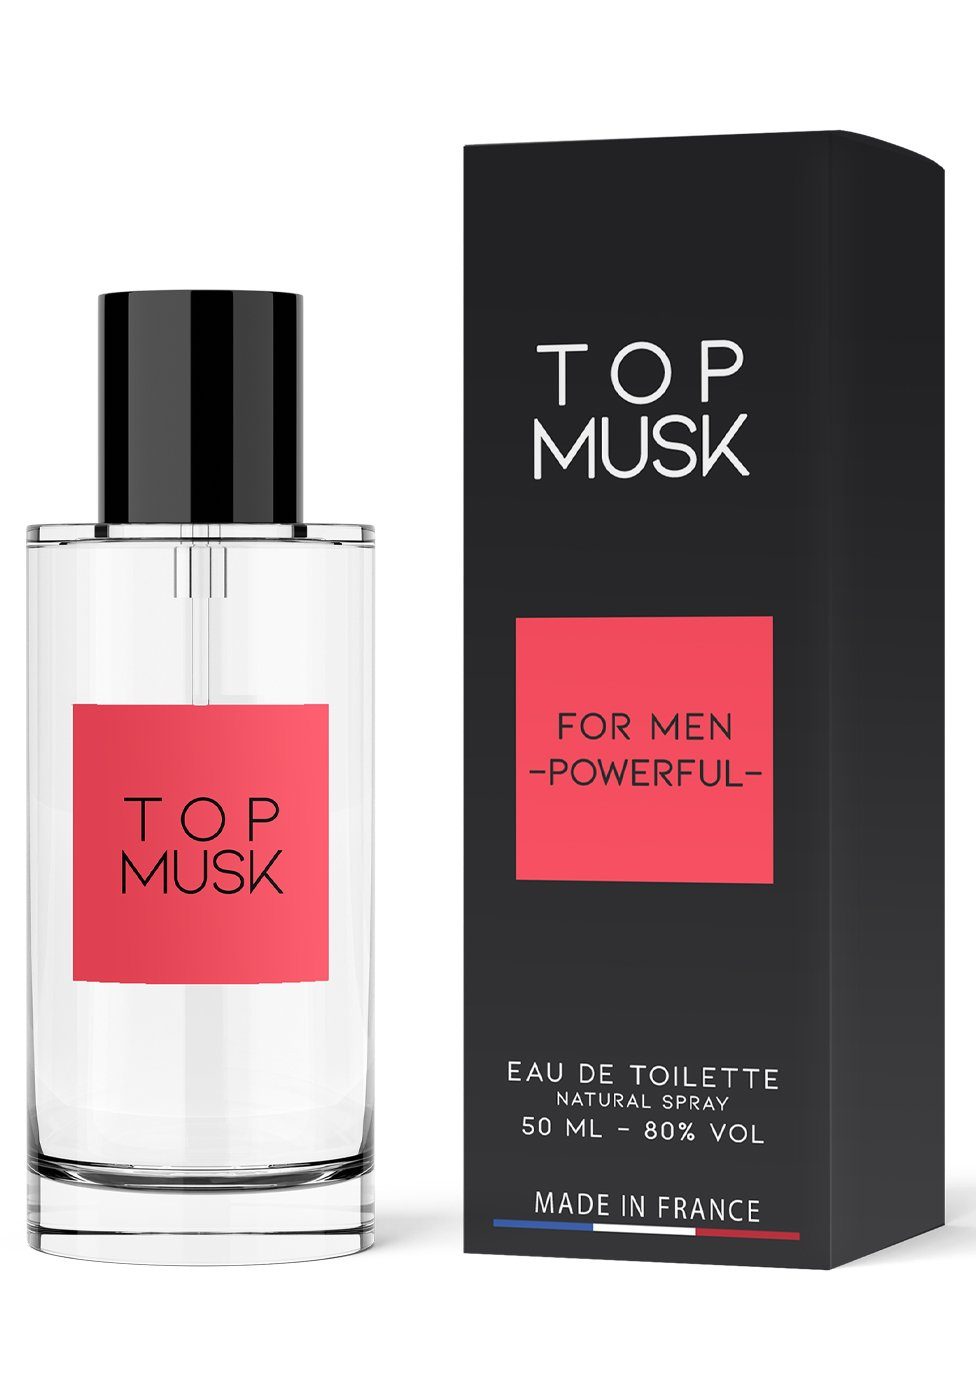 Ruf Eau de Toilette Top Musk for Men Parfum